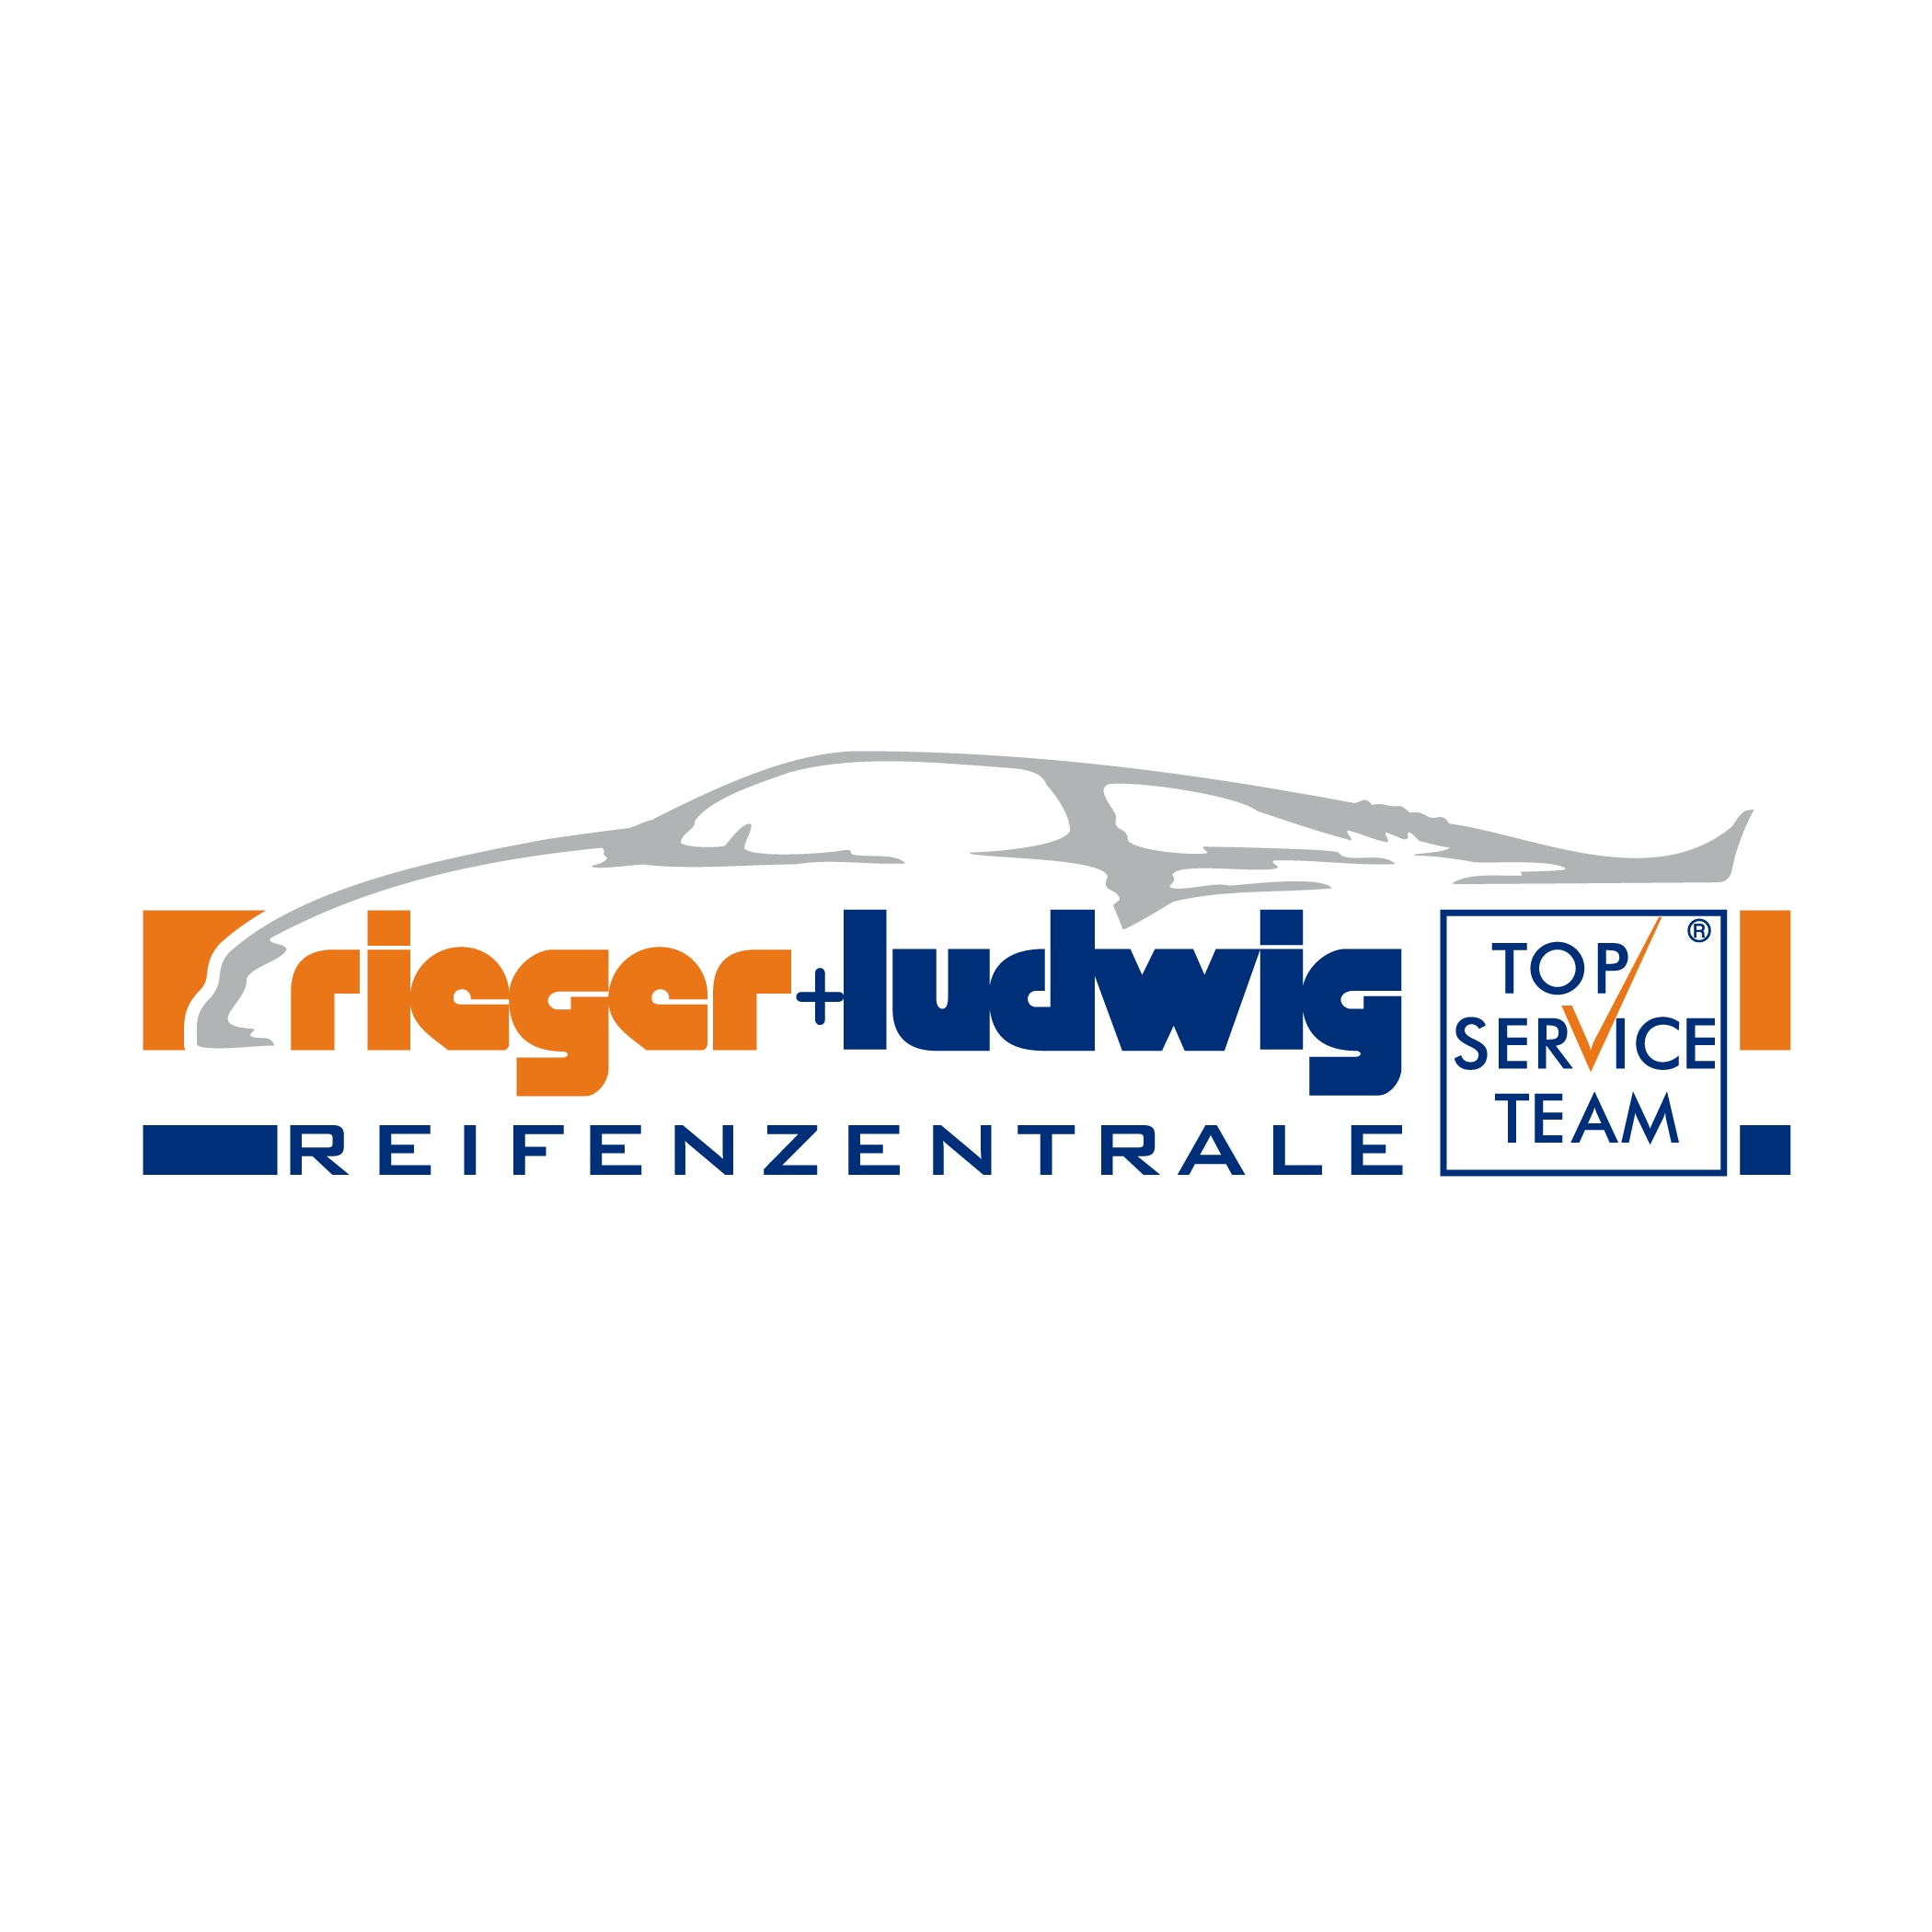 Reifenzentrale Rieger & Ludwig GmbH in 86633 Neuburg